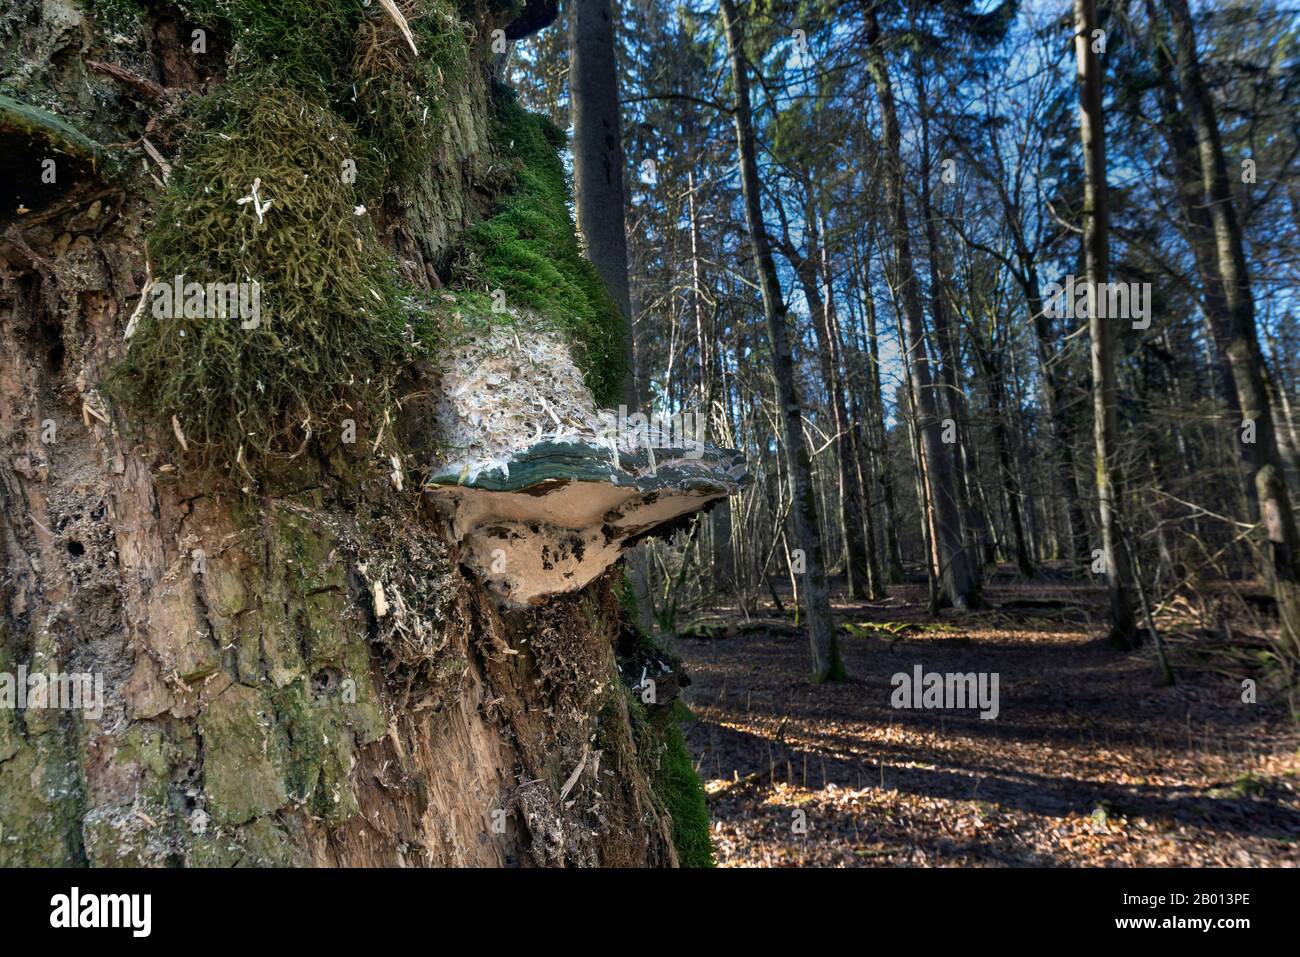 Forêt Primaire, Bialowieza, Pologne Banque D'Images